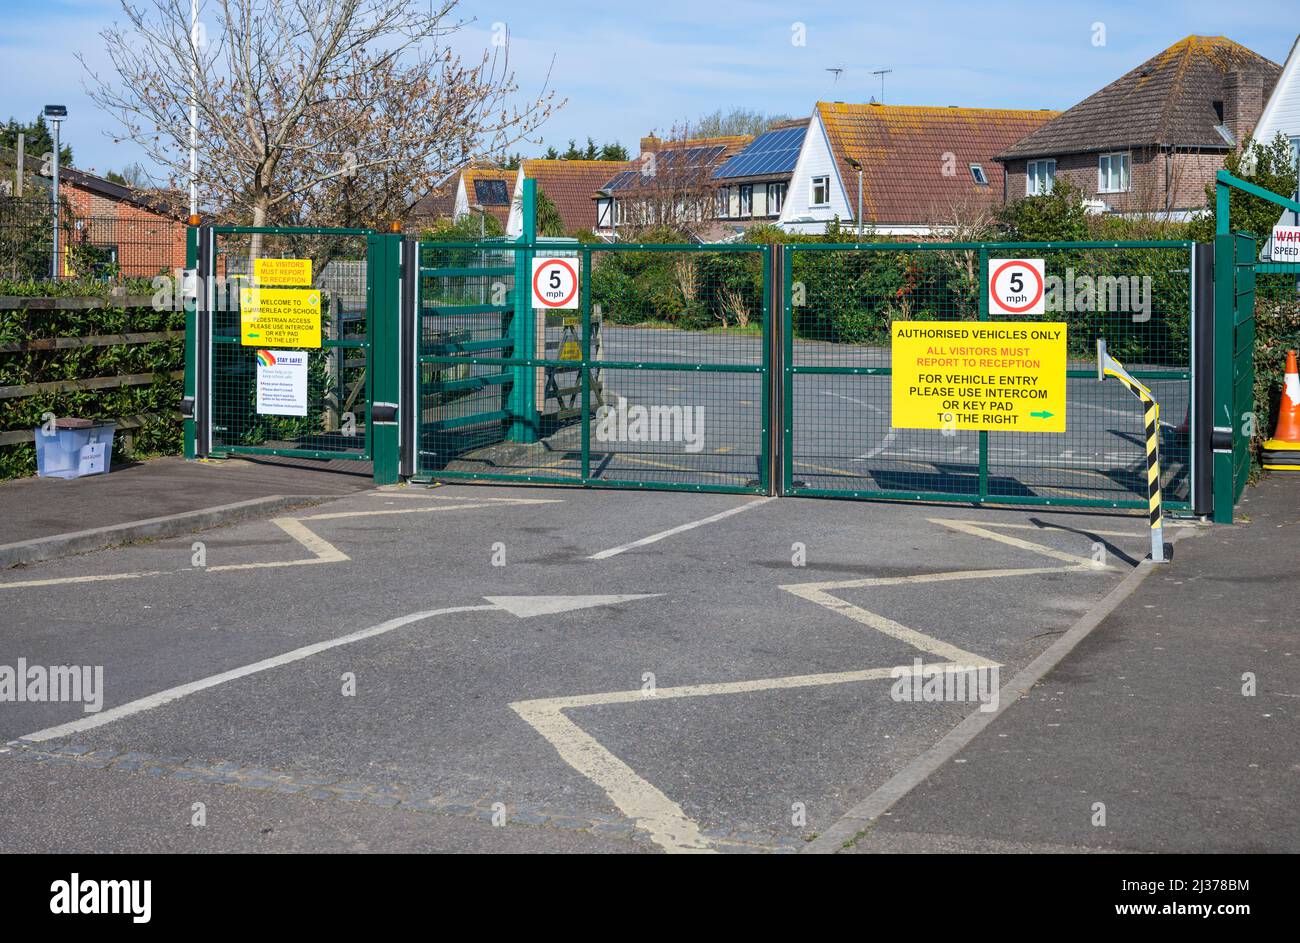 Porte chiuse e chiuse con chiusura a chiave della scuola solo con veicoli autorizzati e 5mph segnali di limite di velocità presso una scuola elementare in Inghilterra, Regno Unito. Foto Stock